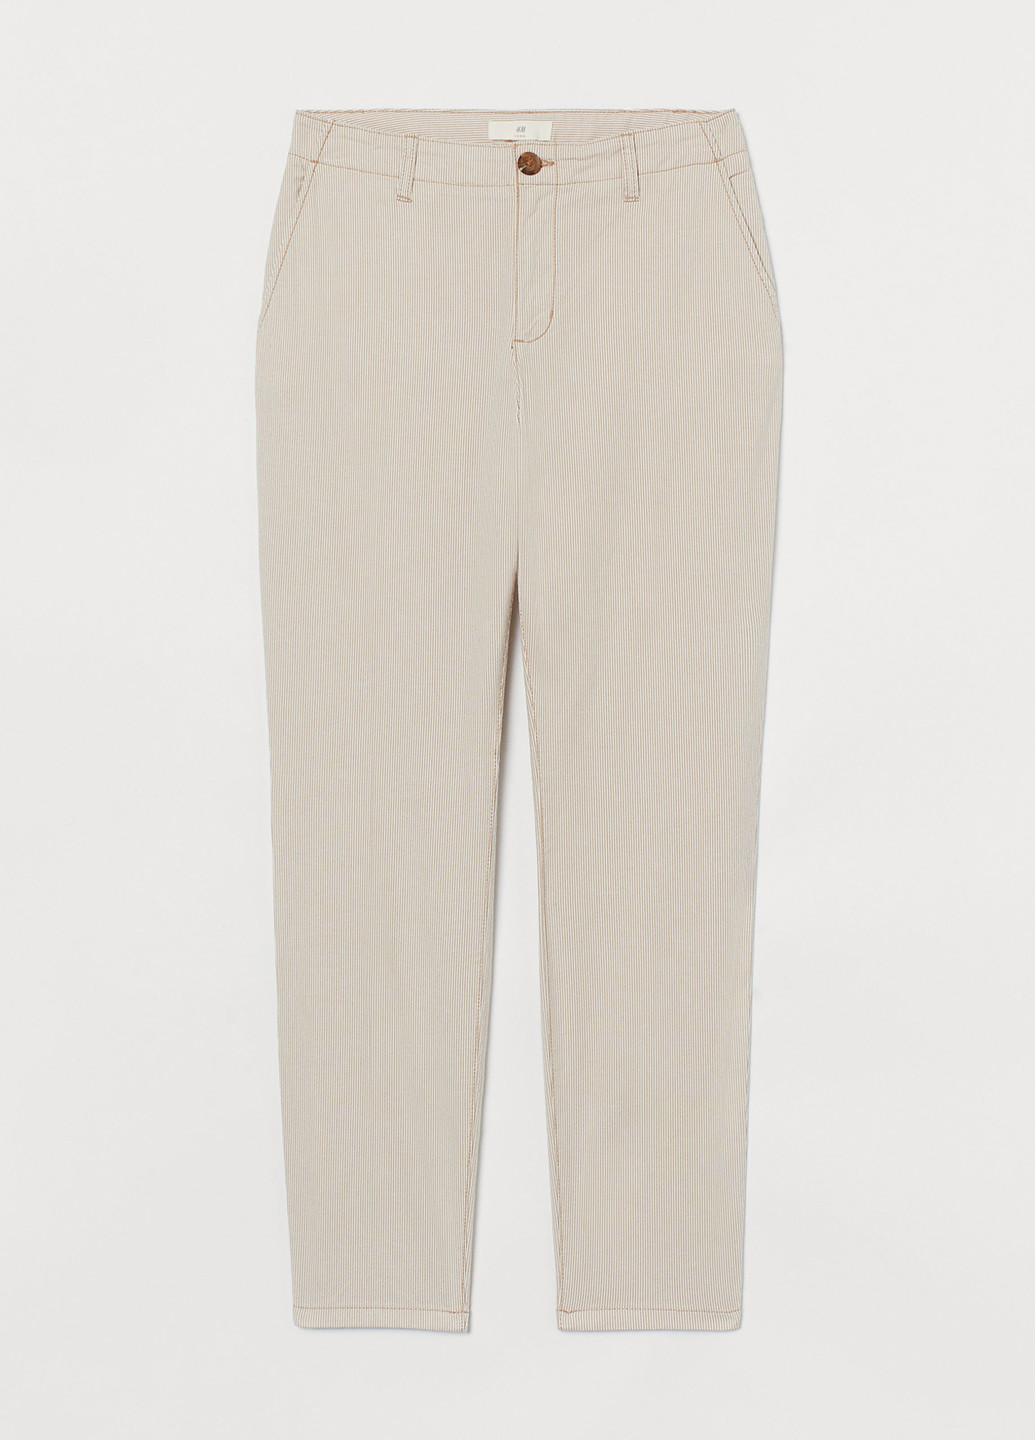 Бежевые кэжуал демисезонные чиносы, укороченные брюки H&M